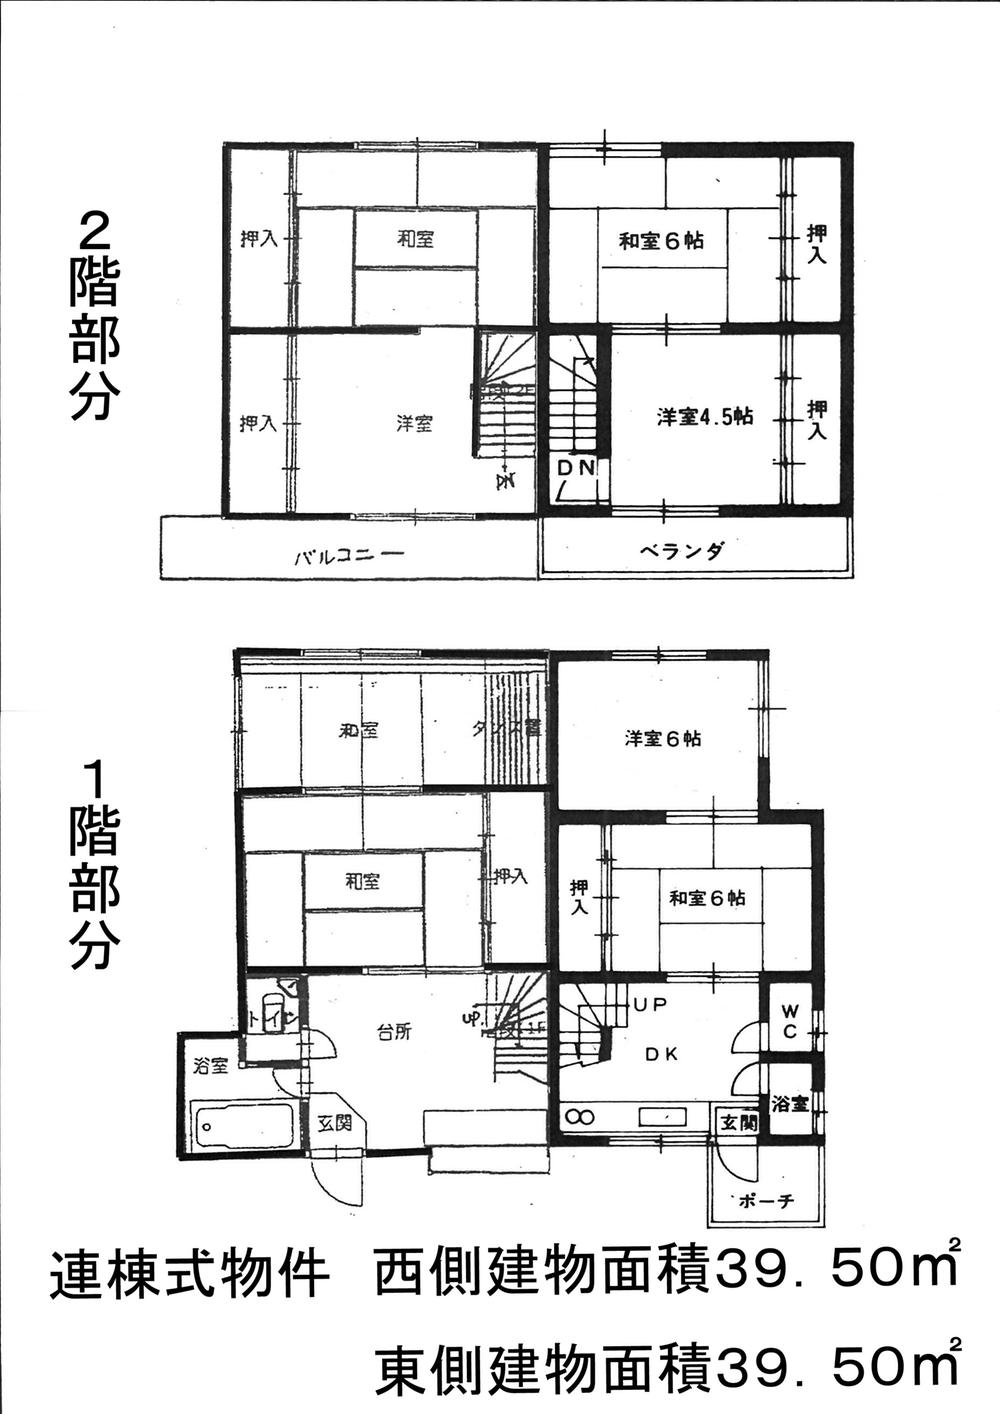 Floor plan. 14.9 million yen, 8DK, Land area 119.14 sq m , Building area 79 sq m